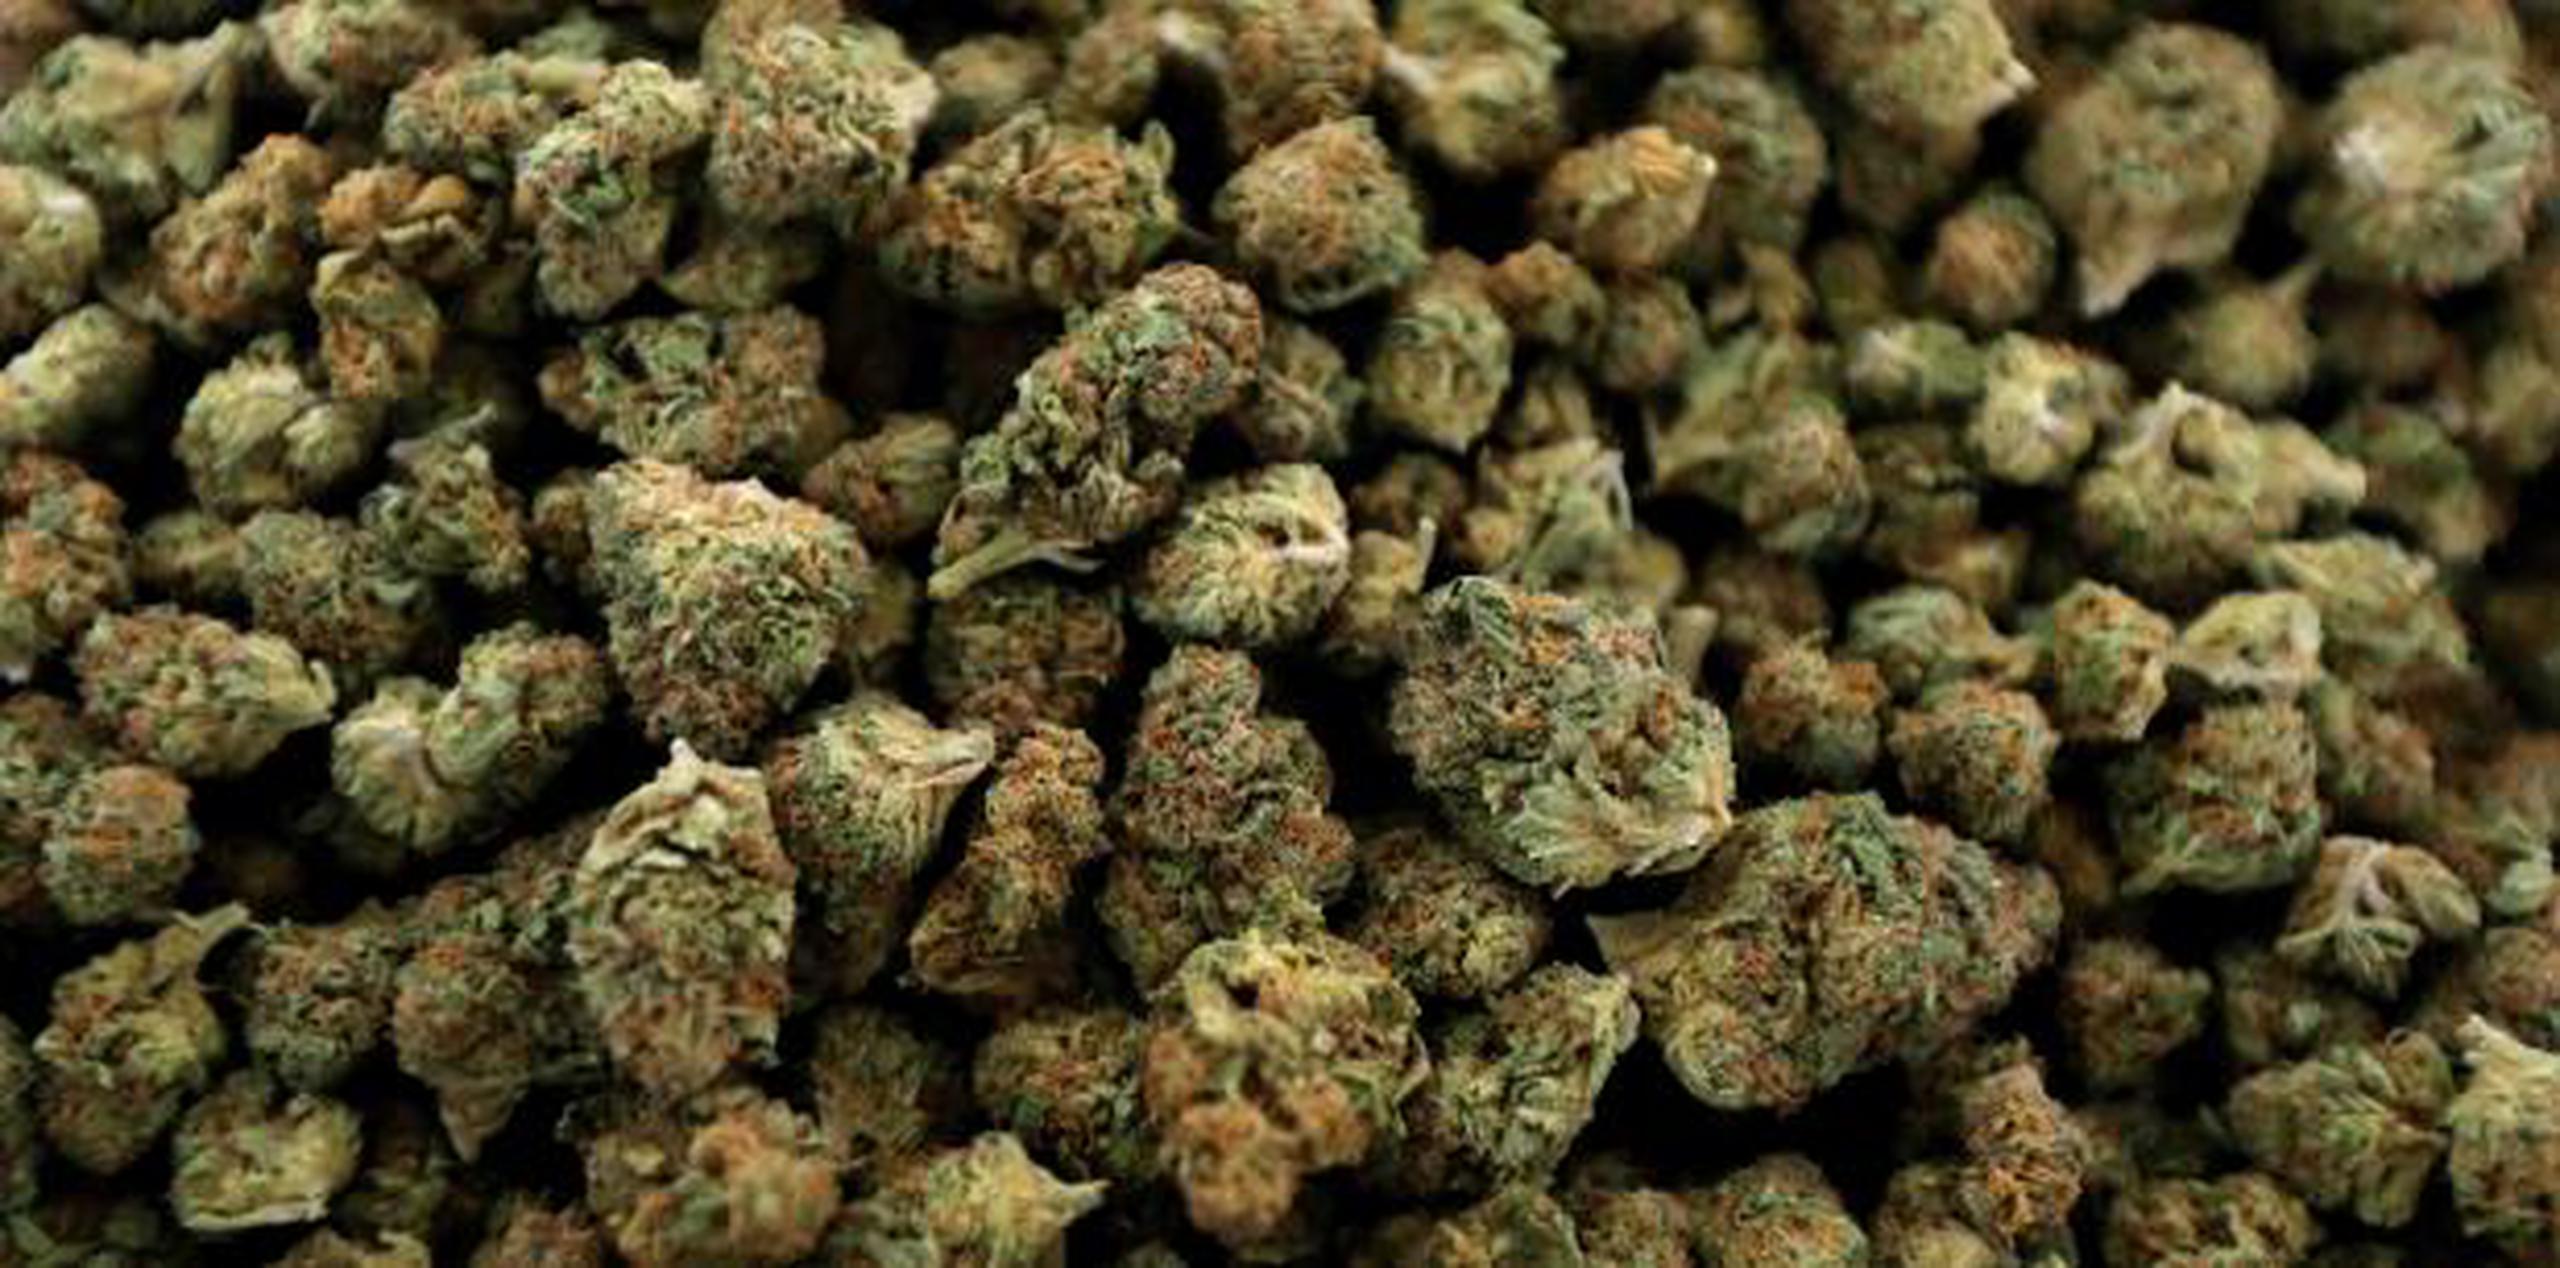 Se espera que el rápido crecimiento del mercado de cannabis continúe a medida que se extiende la legalización en Estados Unidos y cambian las normas sociales. (AP)